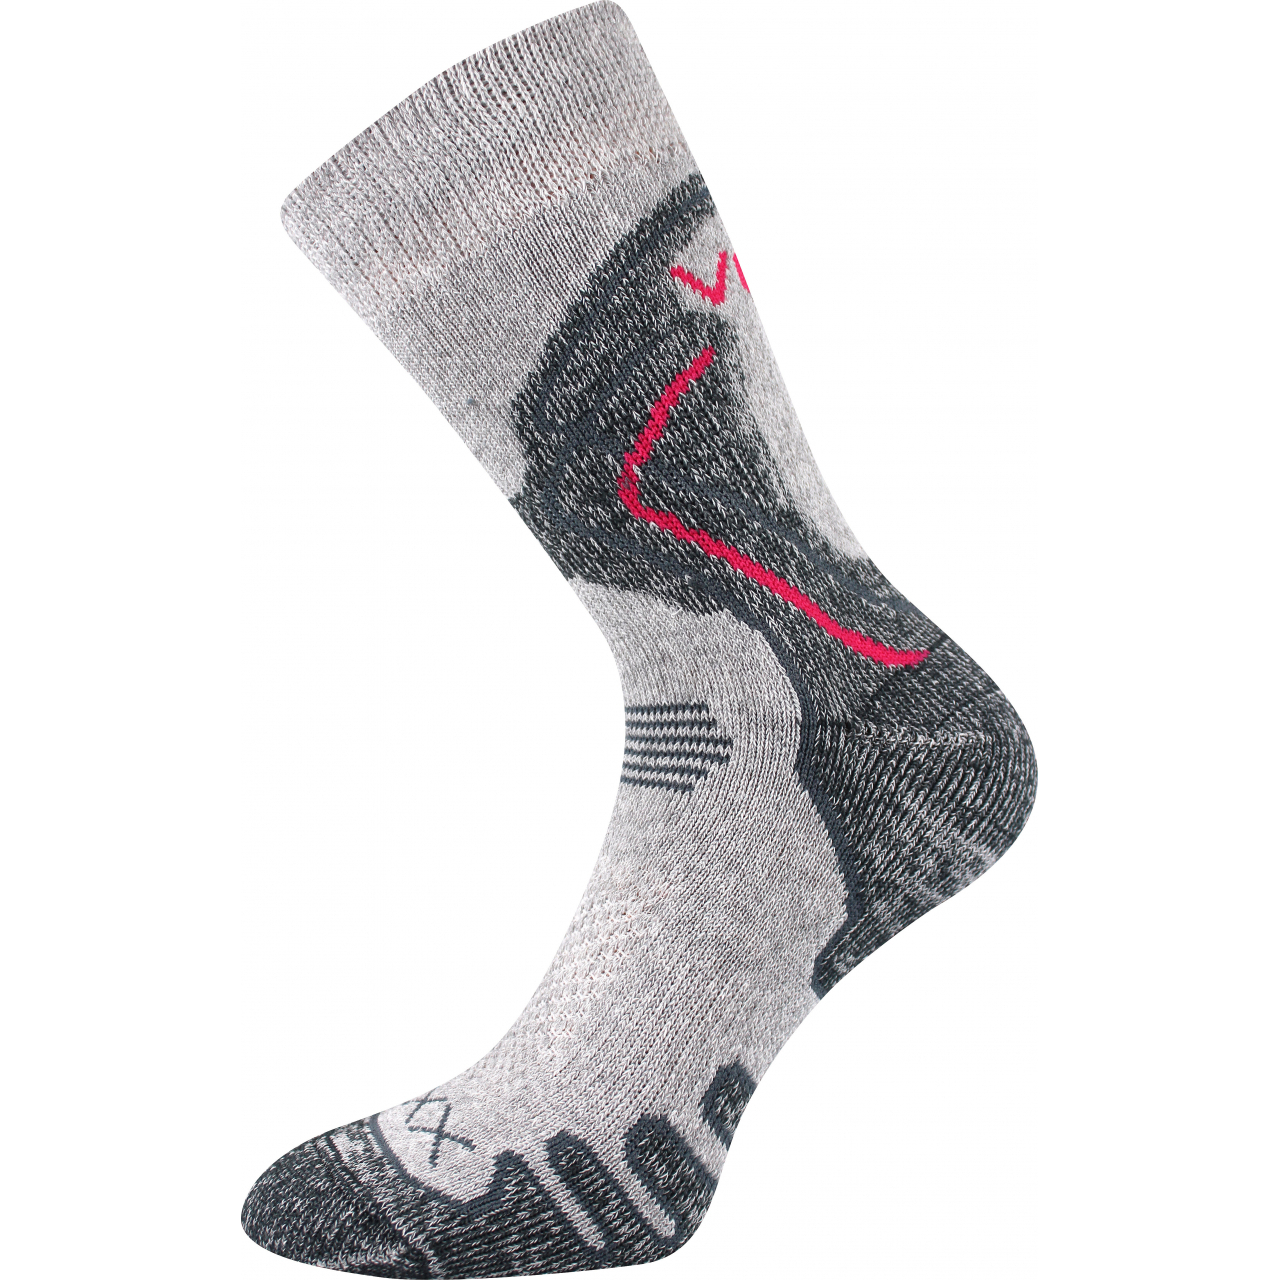 Ponožky trekingové unisex Voxx Limit III - světle šedé, 35-38